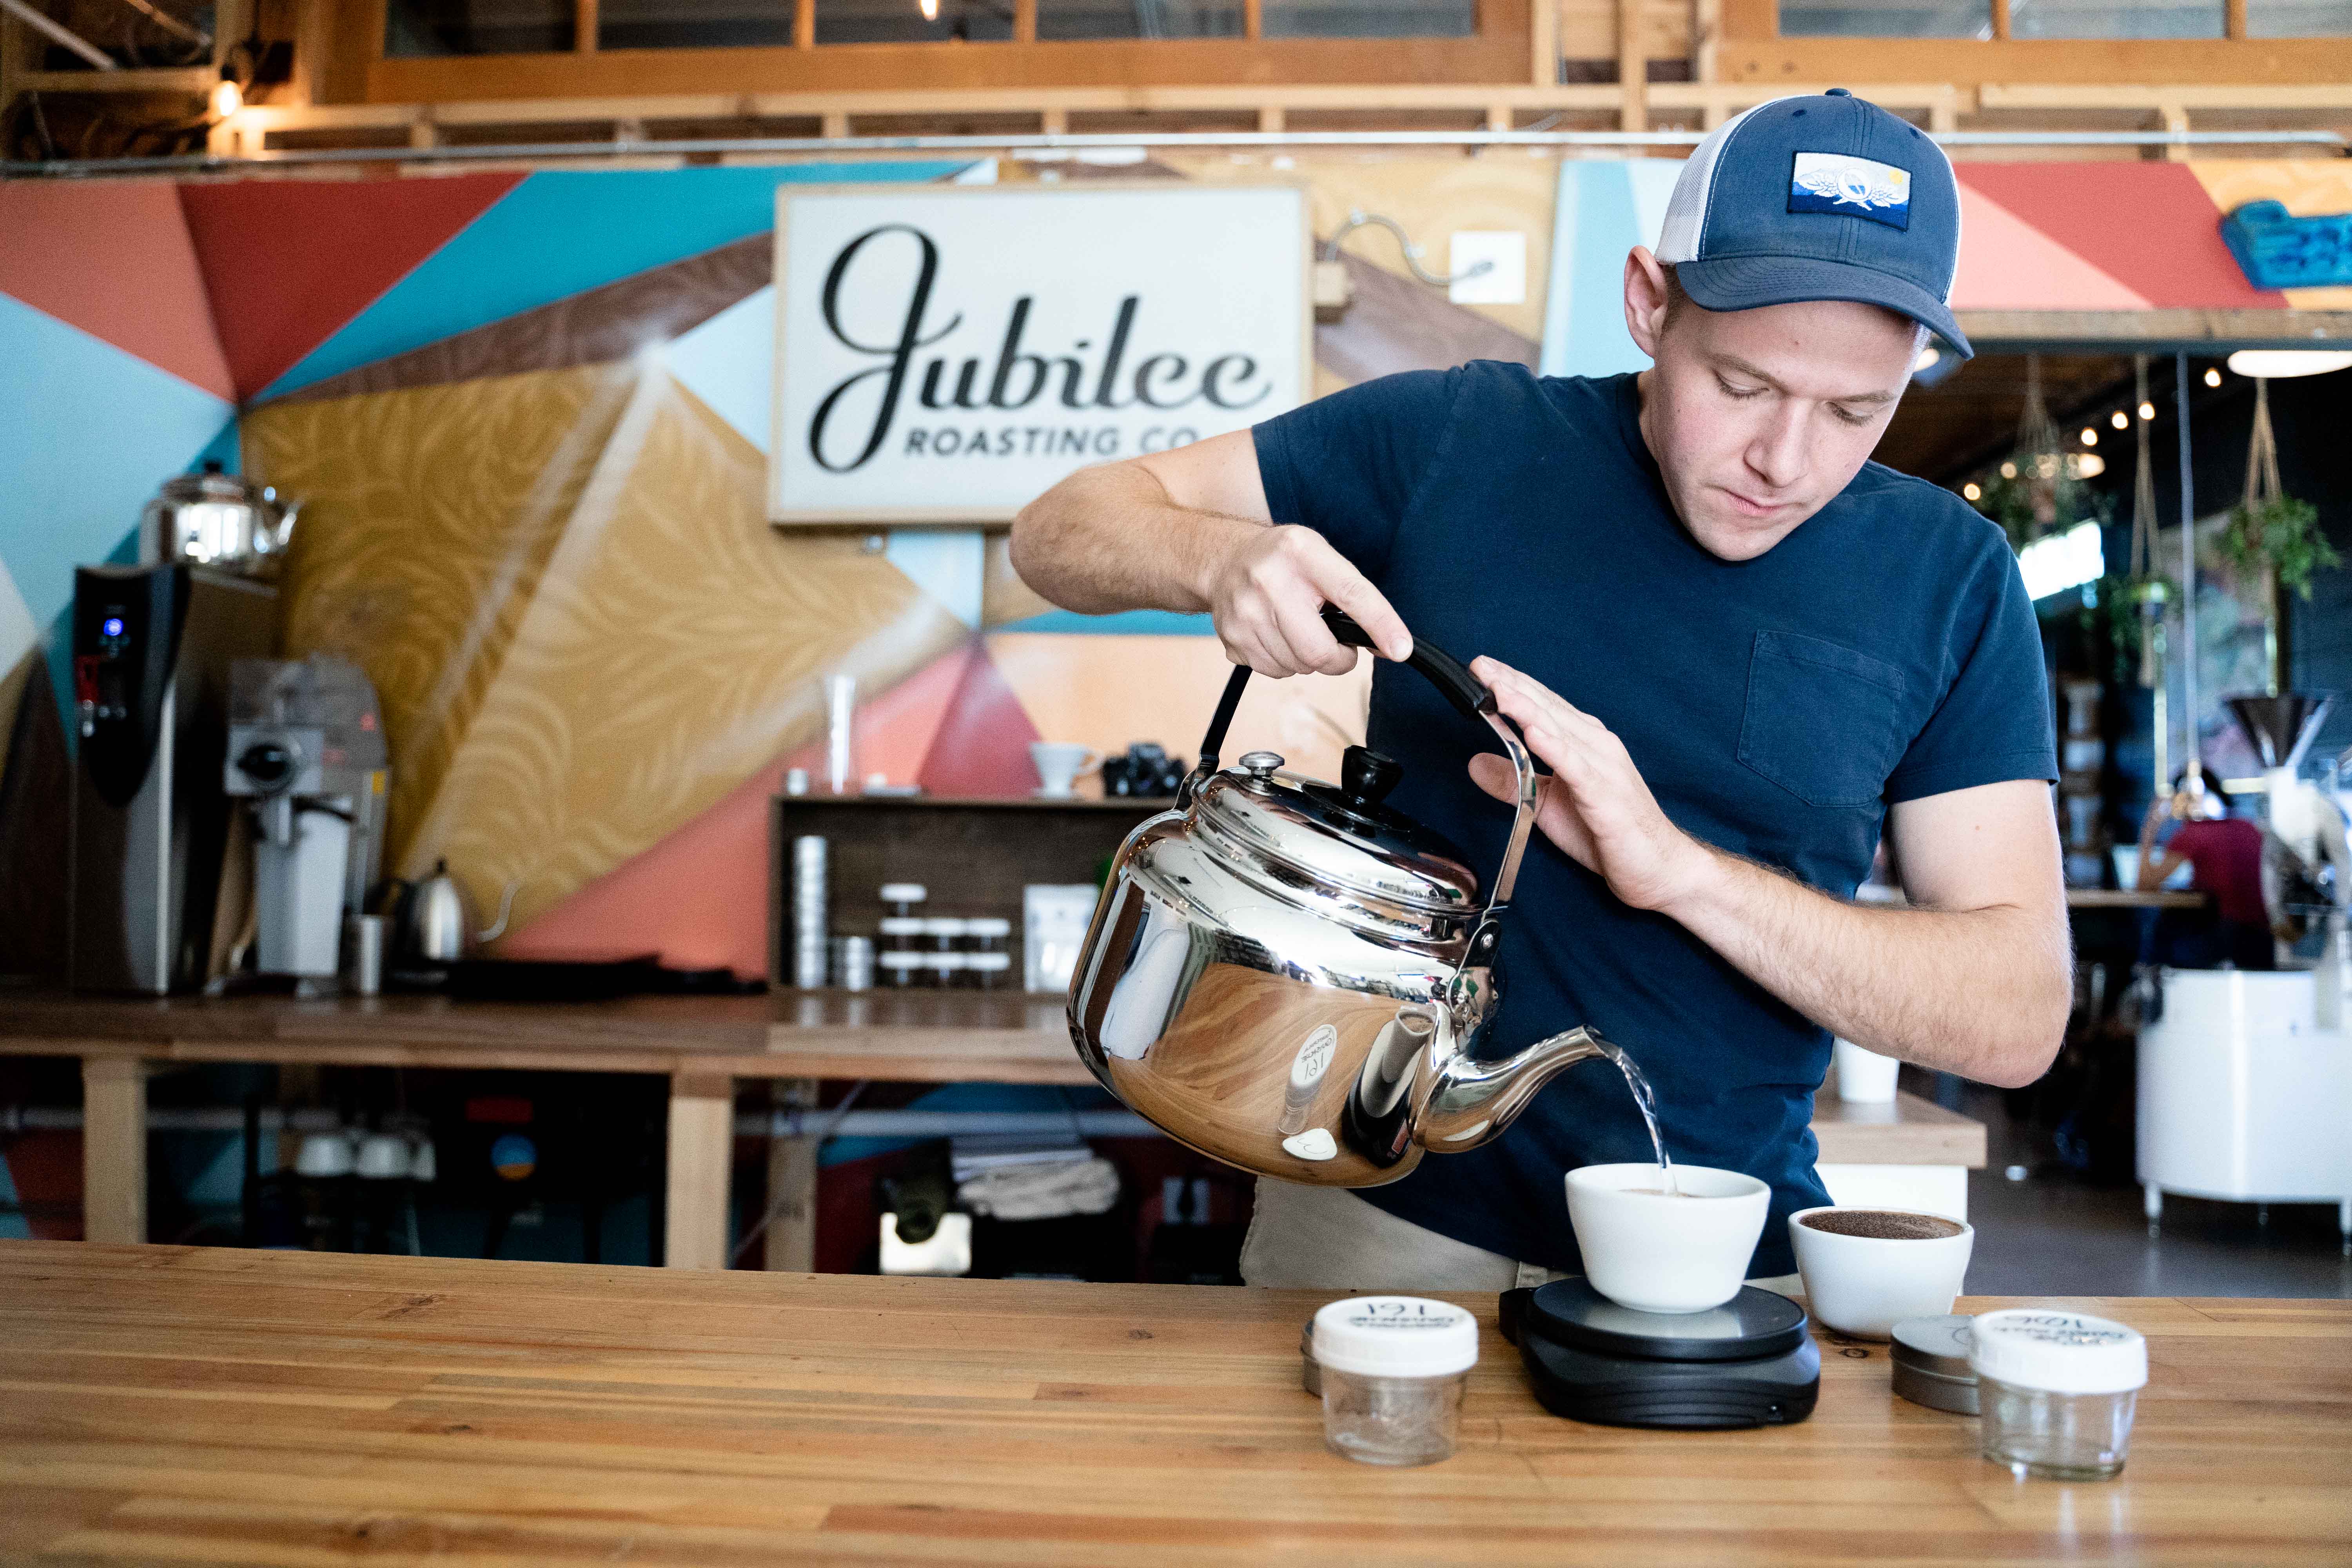 Jubilee coffee